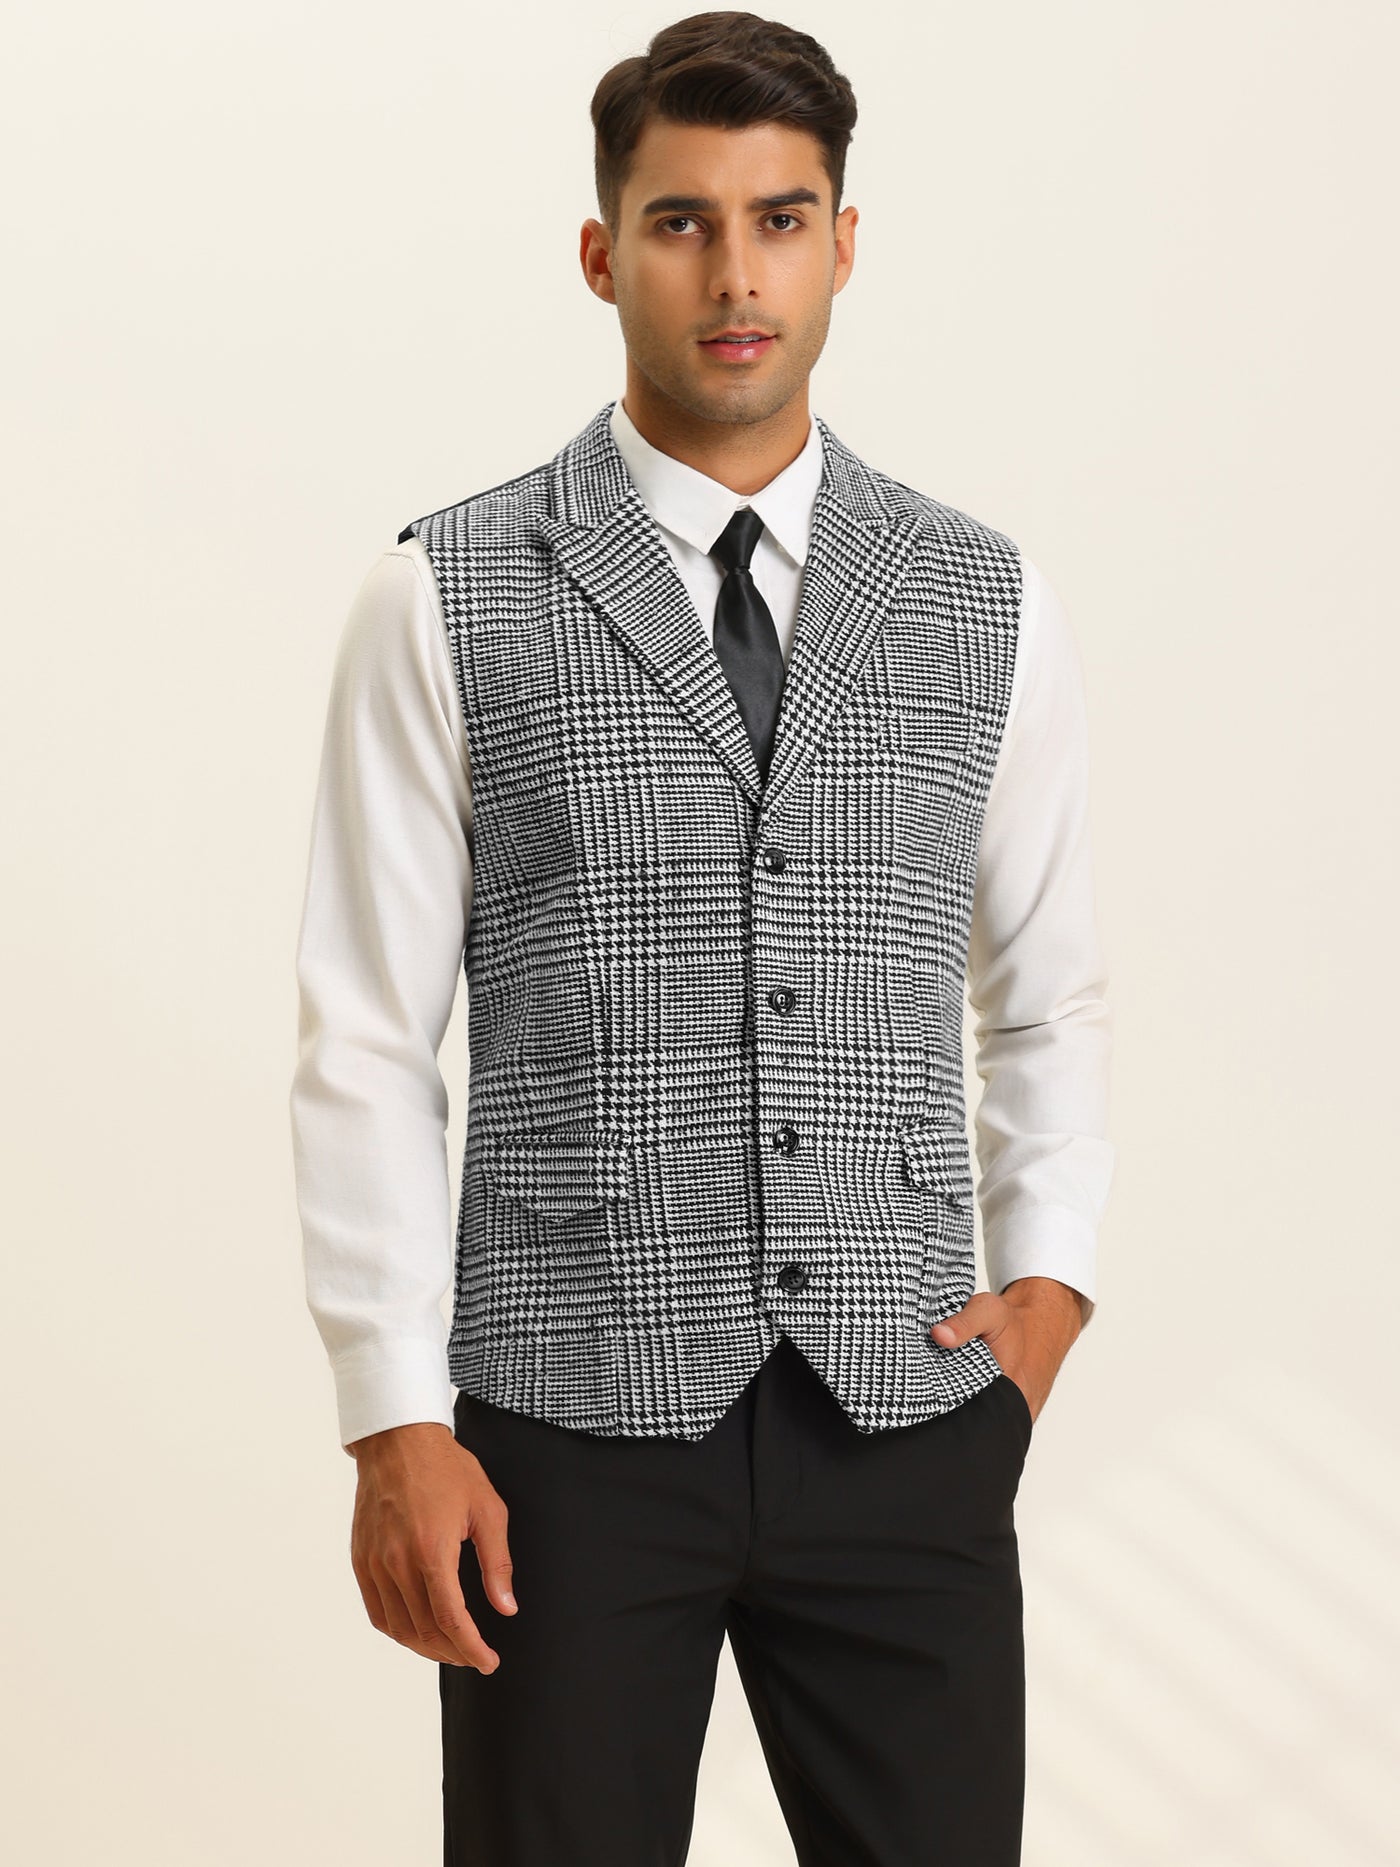 Bublédon Men's Houndstooth Waistcoat Peaked Lapel Formal Plaid Suit Vest